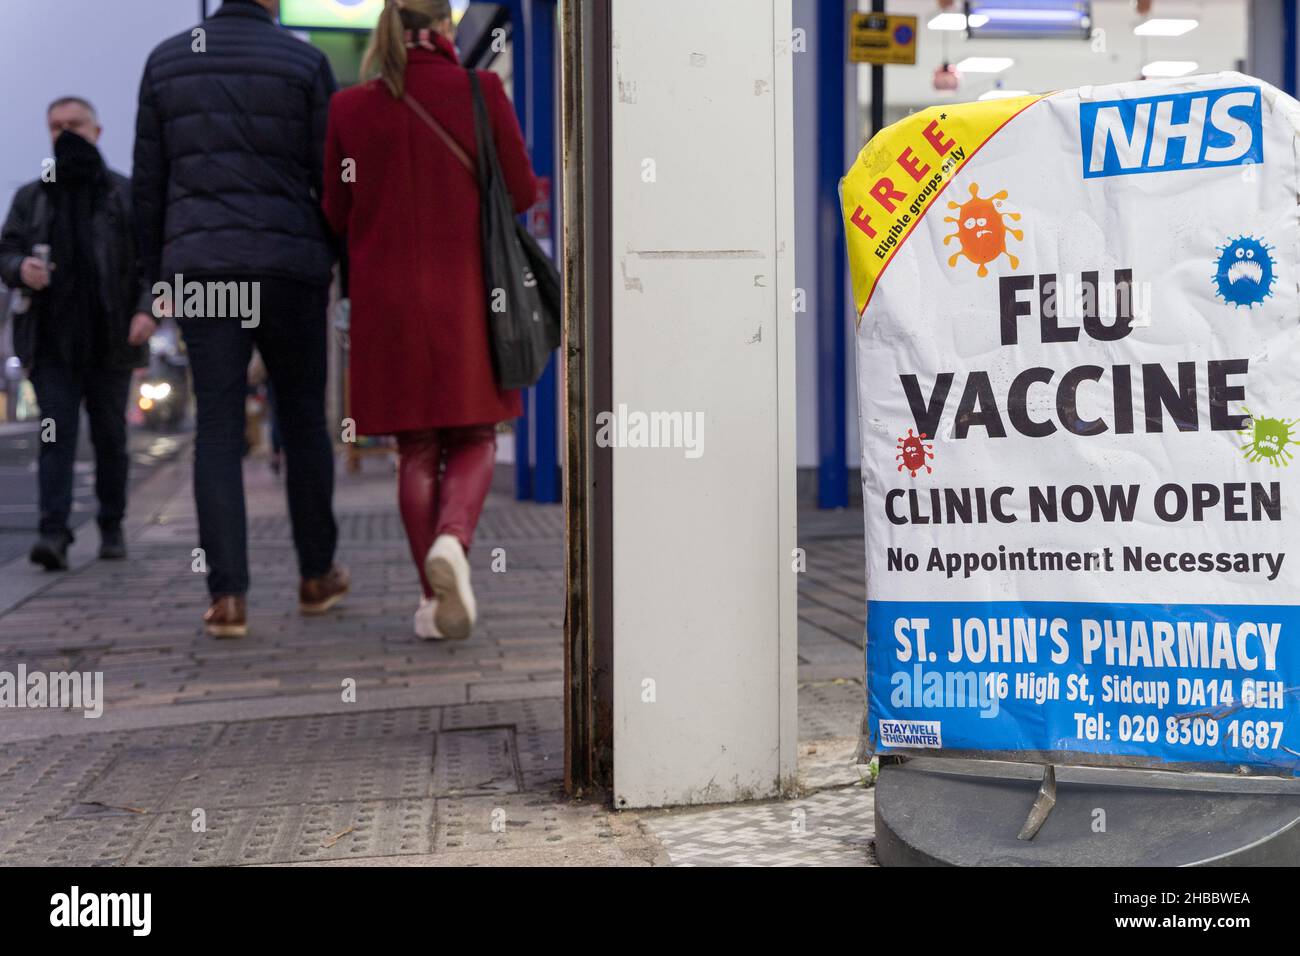 Les acheteurs de Noël marchent au-delà de l'affiche vaccin contre la grippe offrant gratuitement la grippe jab aux personnes admissibles à la pharmacie Sidcup Londres Angleterre Banque D'Images